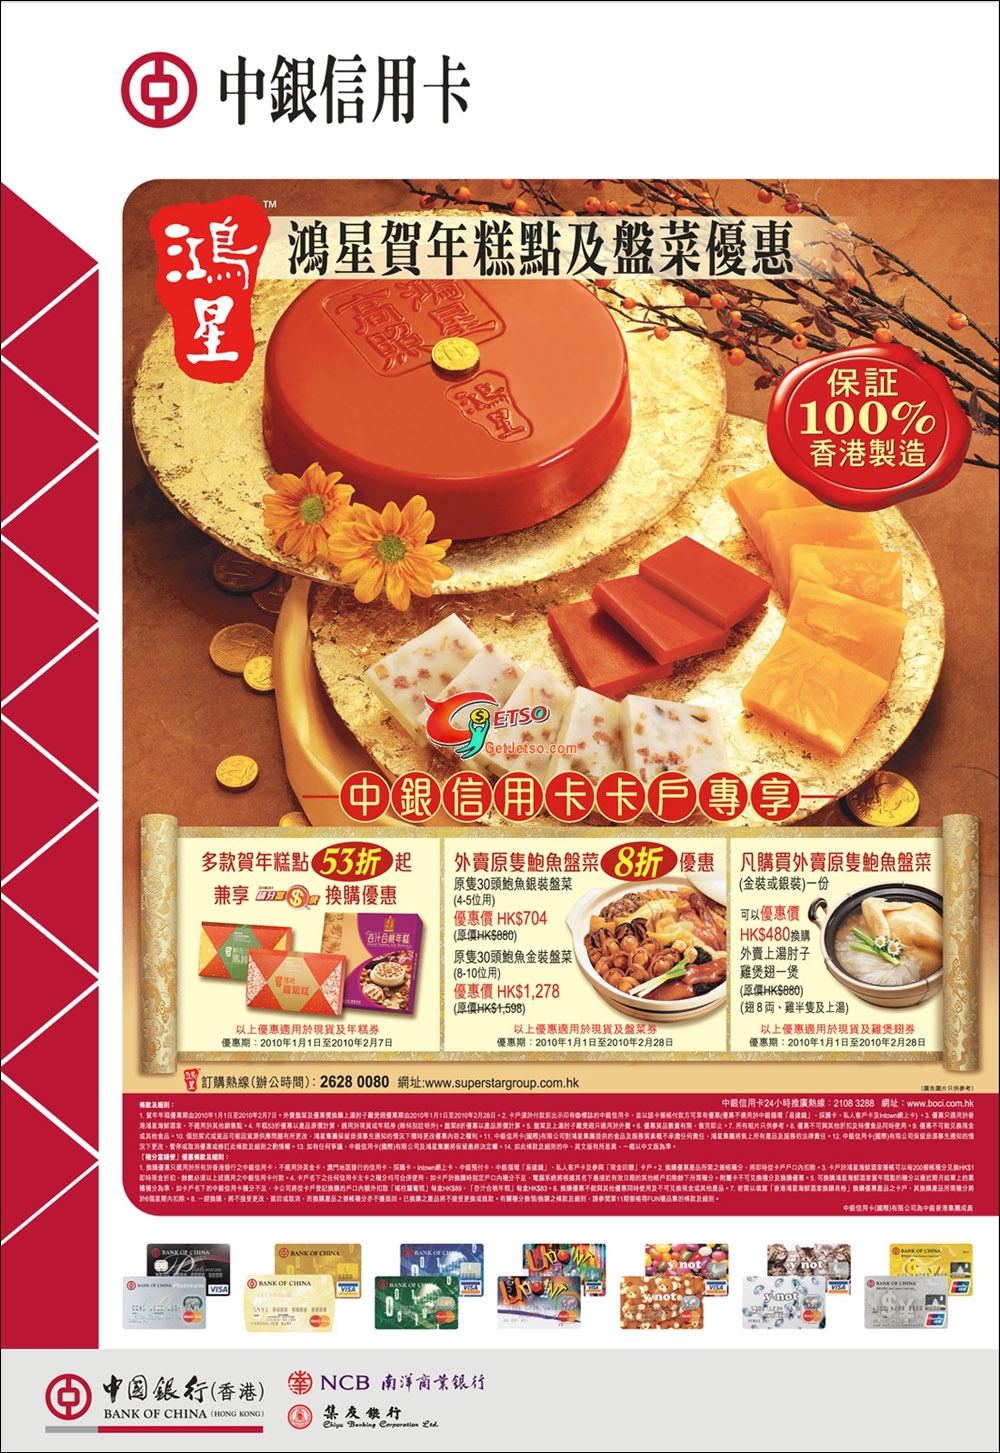 中銀信用卡尊享鴻星新年美食優惠圖片1